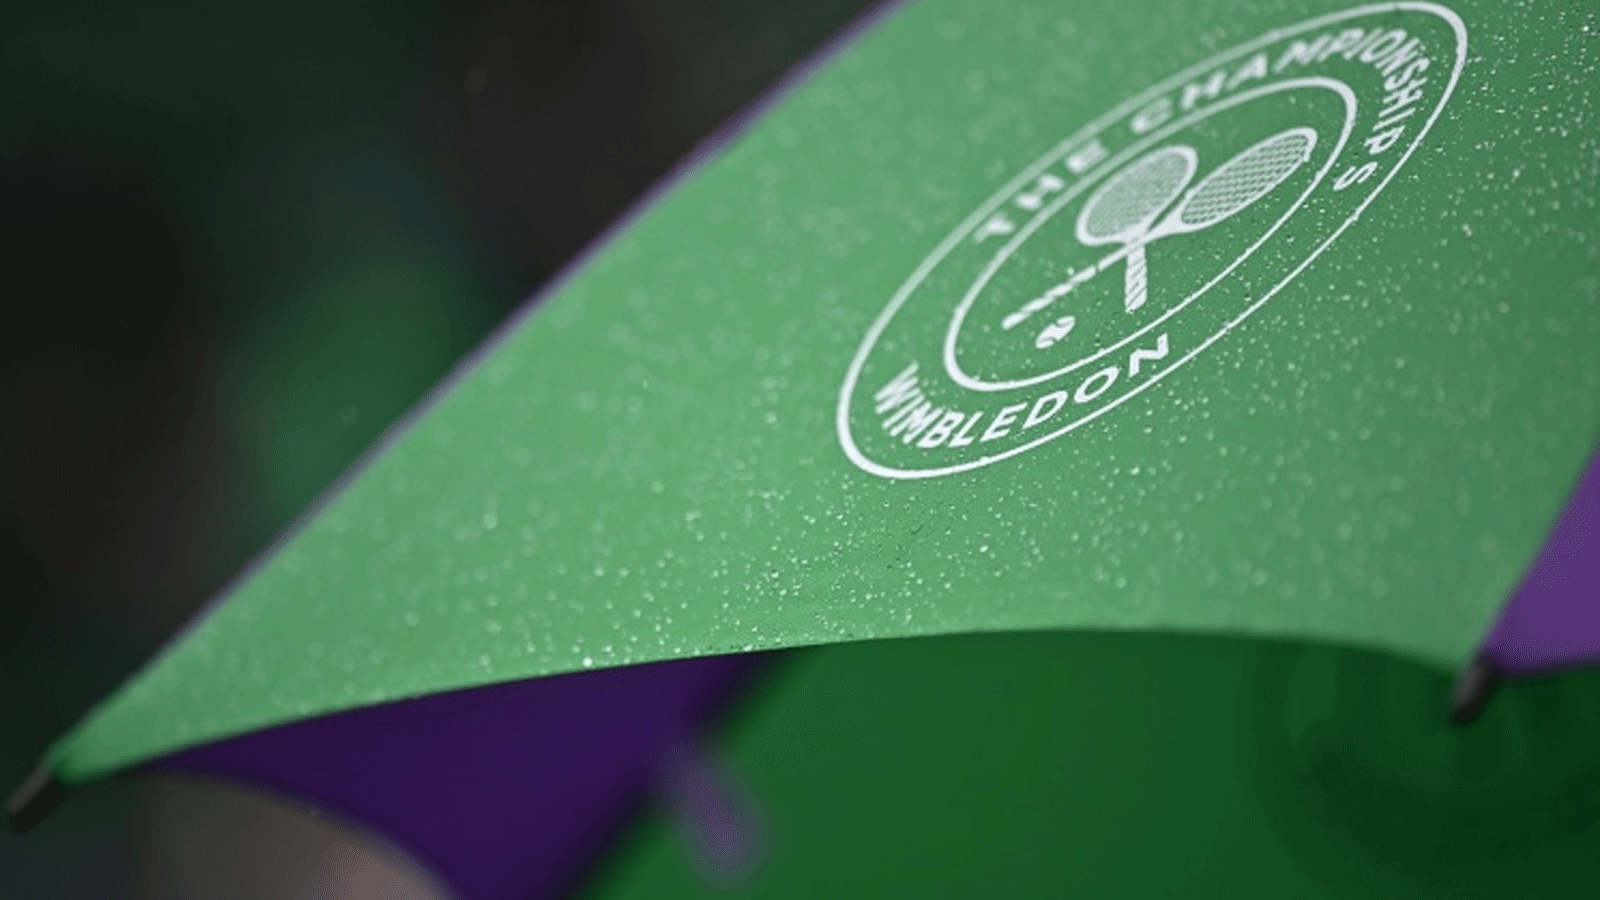 مظلة بطولة ويمبلدون مغطاة بقطرات المطر حيث اختبأ المتفرجون في الملعب رقم 2، خلال اليوم الثاني من بطولة ويمبلدون العام الماضي في غرب لندن. 29 حزيران/يونيو 2021